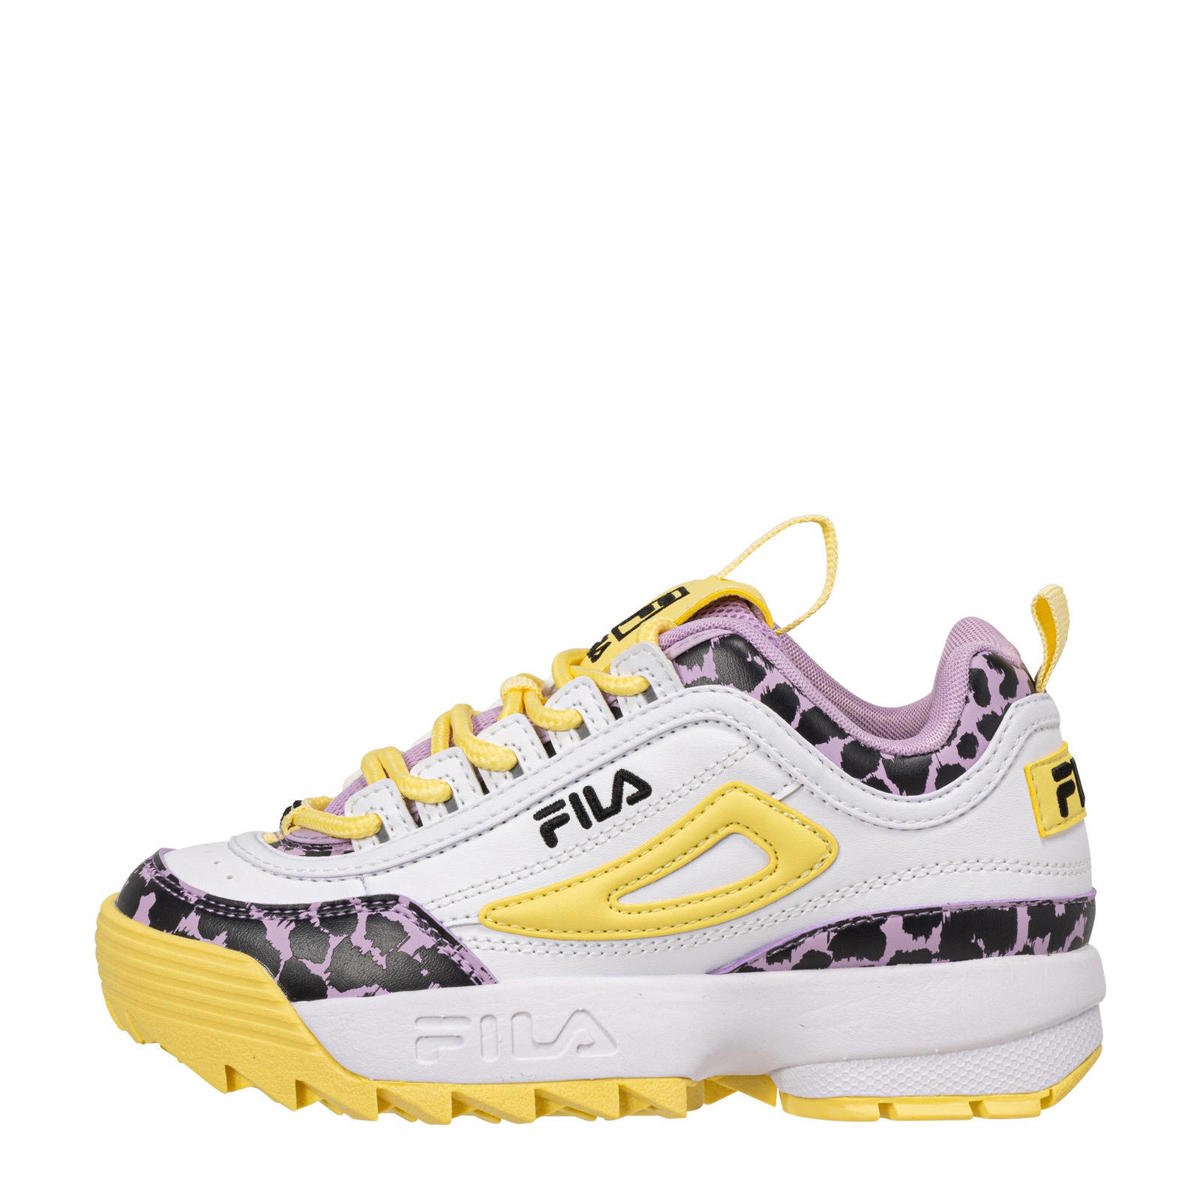 Eerlijk veteraan Ideaal Fila Disruptor F sneakers wit/geel/roze | wehkamp